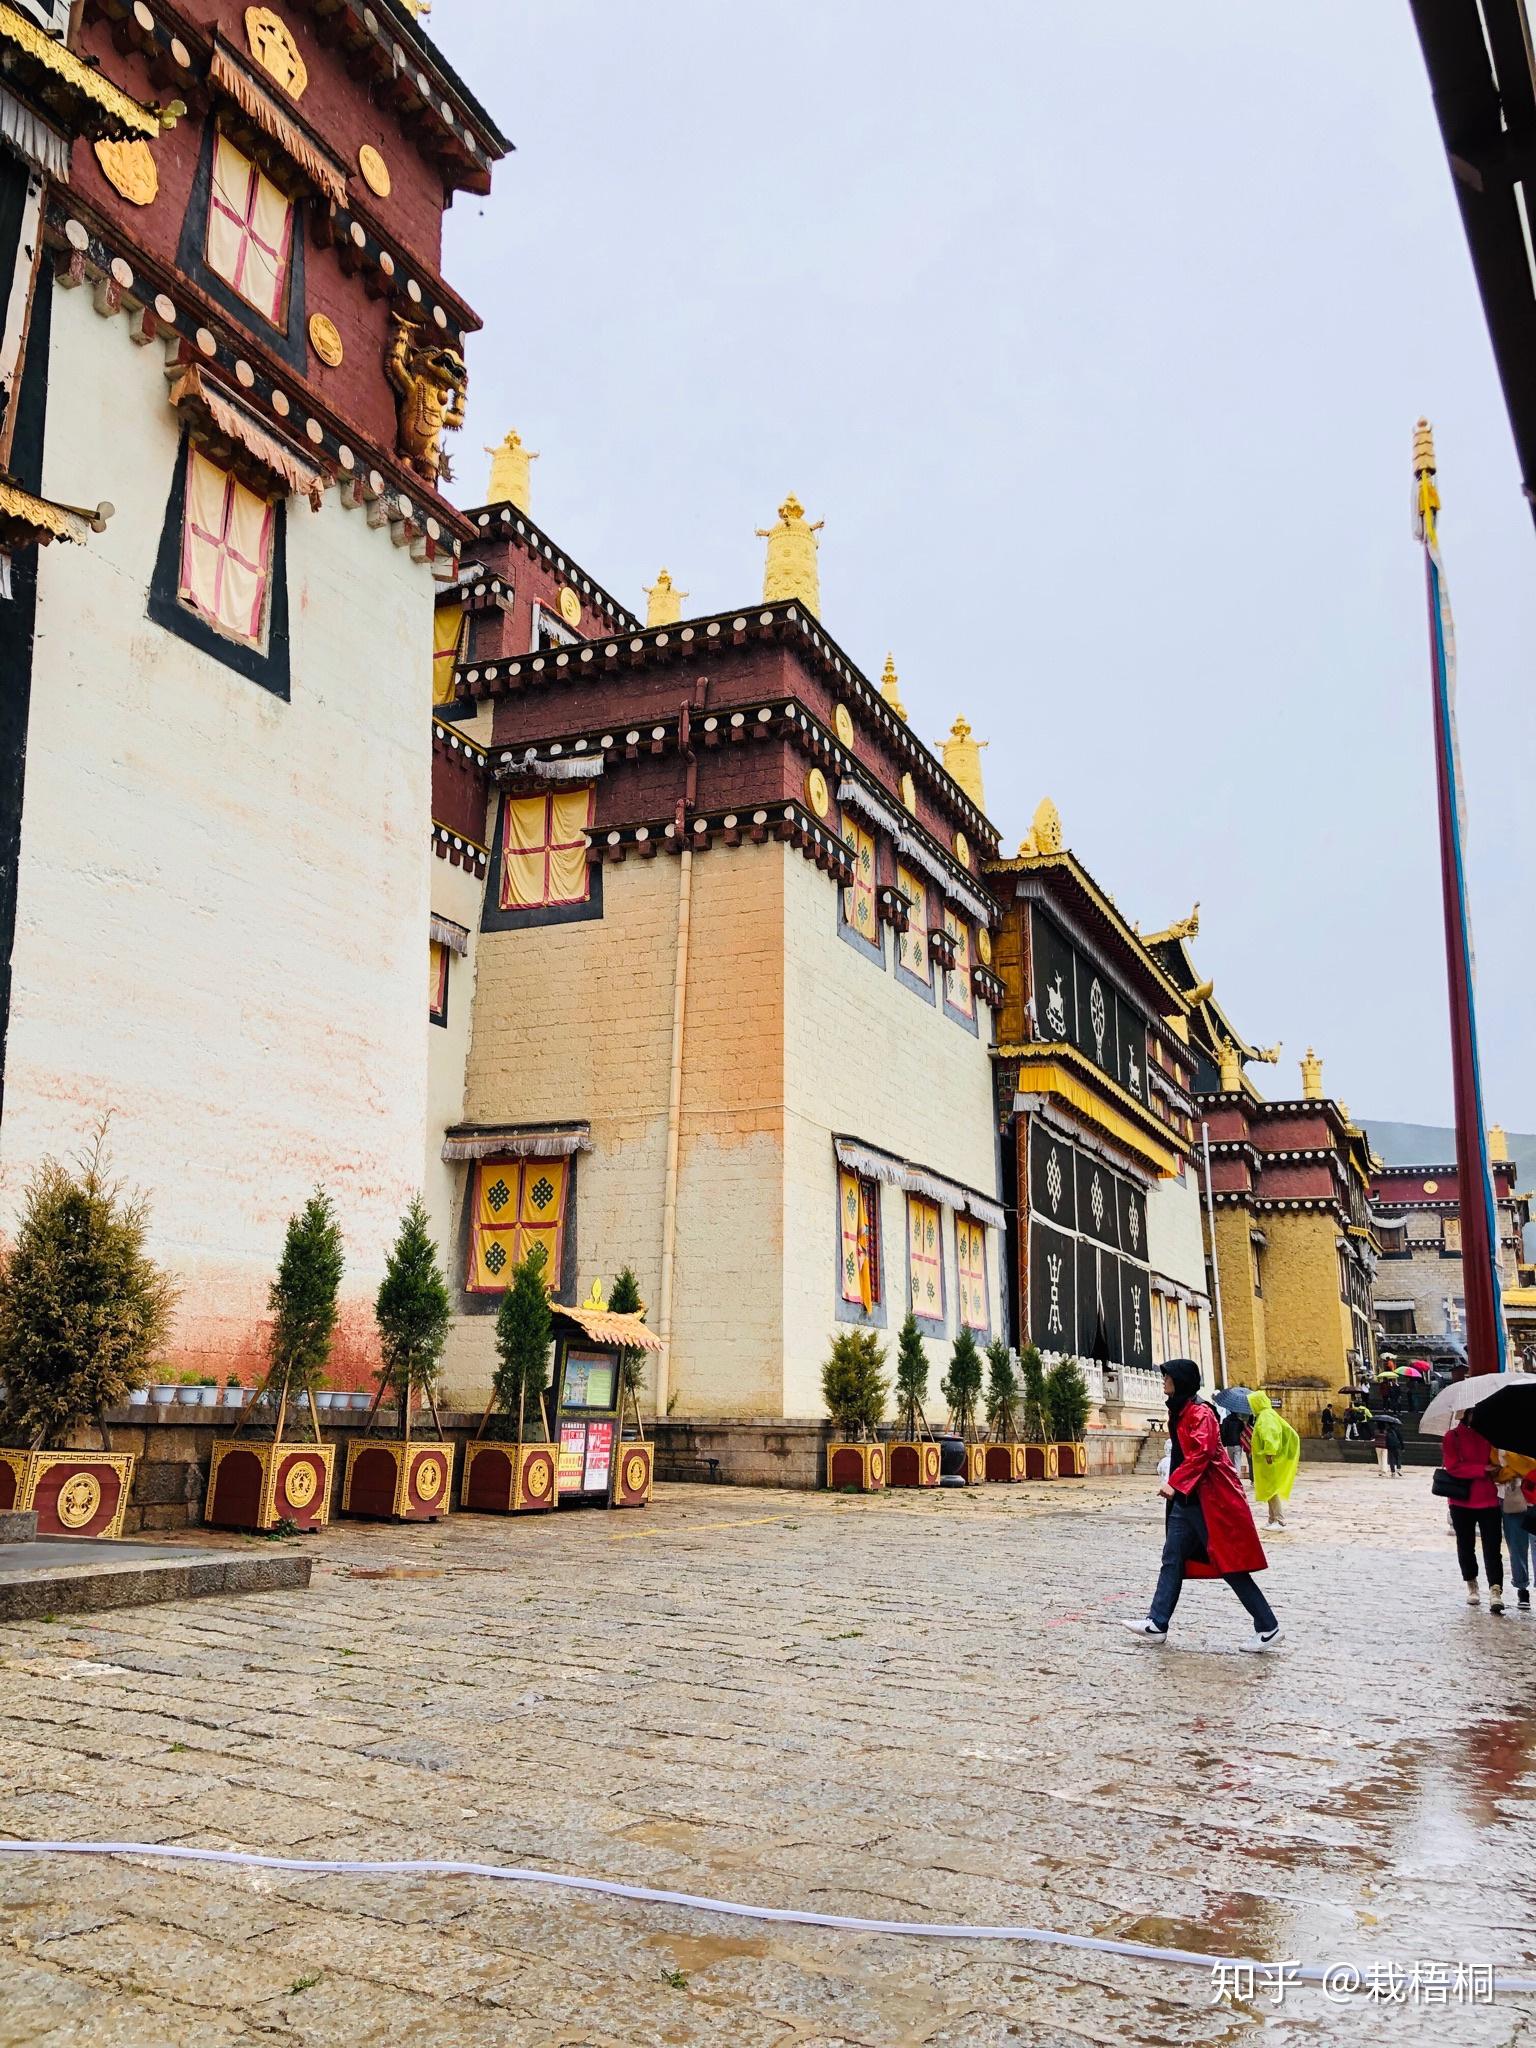 【携程攻略】香格里拉松赞林景区景点,噶丹松赞林寺是云南省规模最大的藏传佛教寺院，也是康区有名的大寺院…